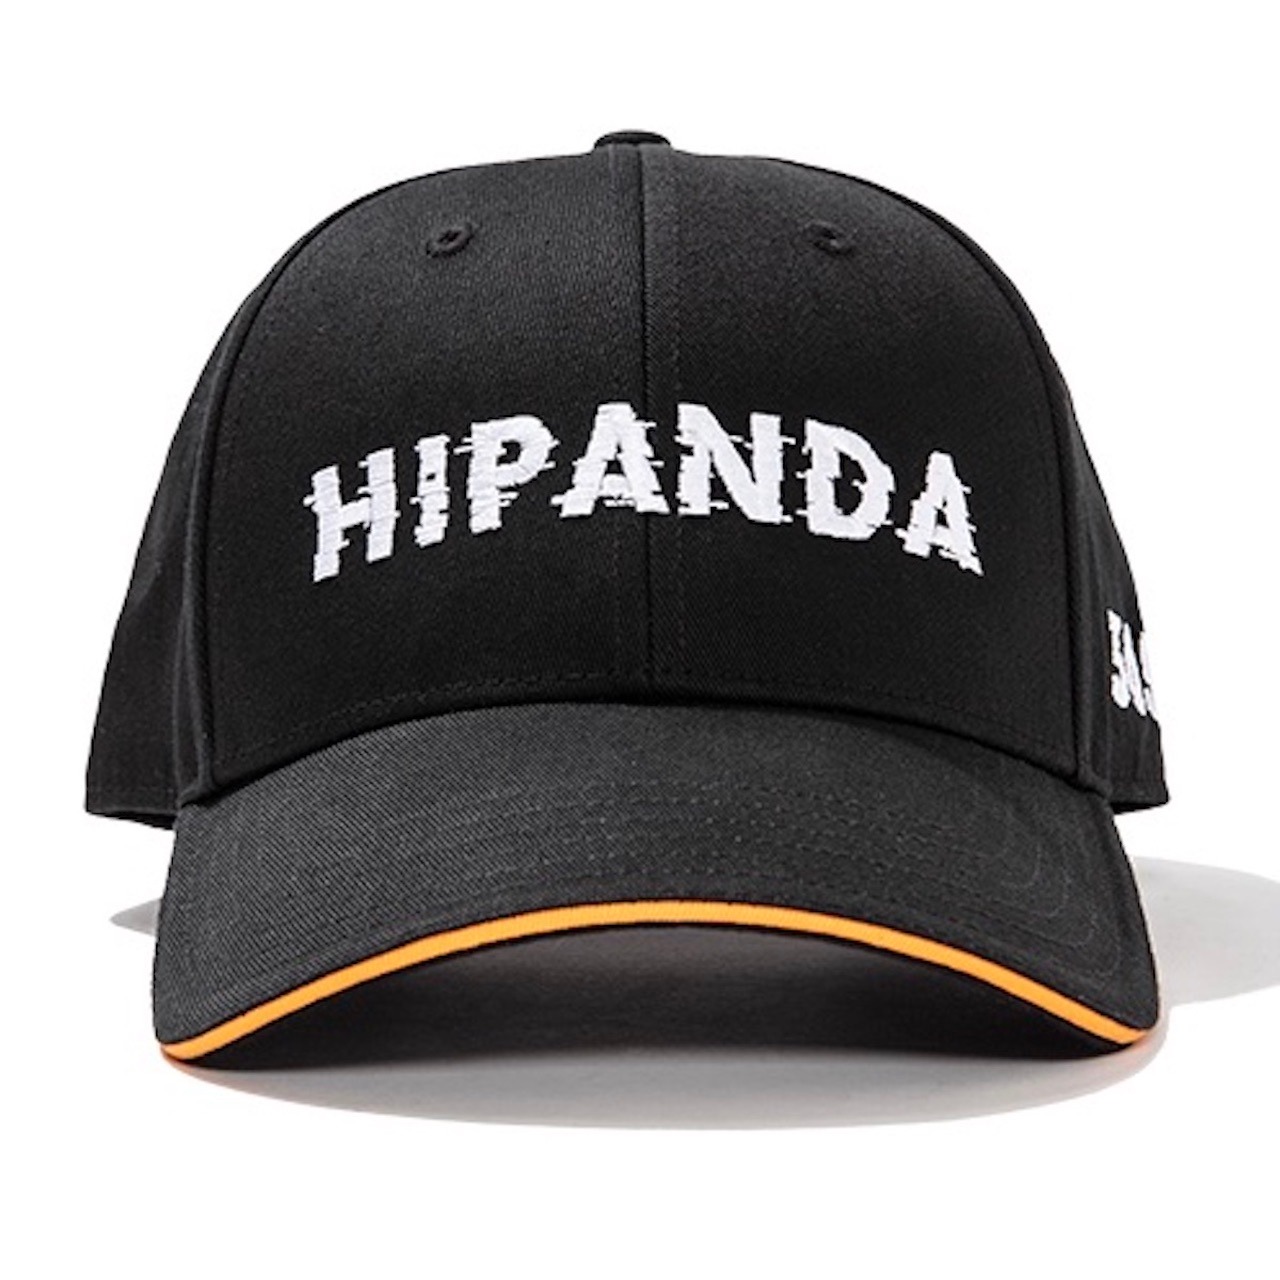 送料無料 【HIPANDA ハイパンダ】男女兼用 ロゴ キャップ 帽子 UNISEX LOGO CAP / BLACK・BLUE・ORANGE